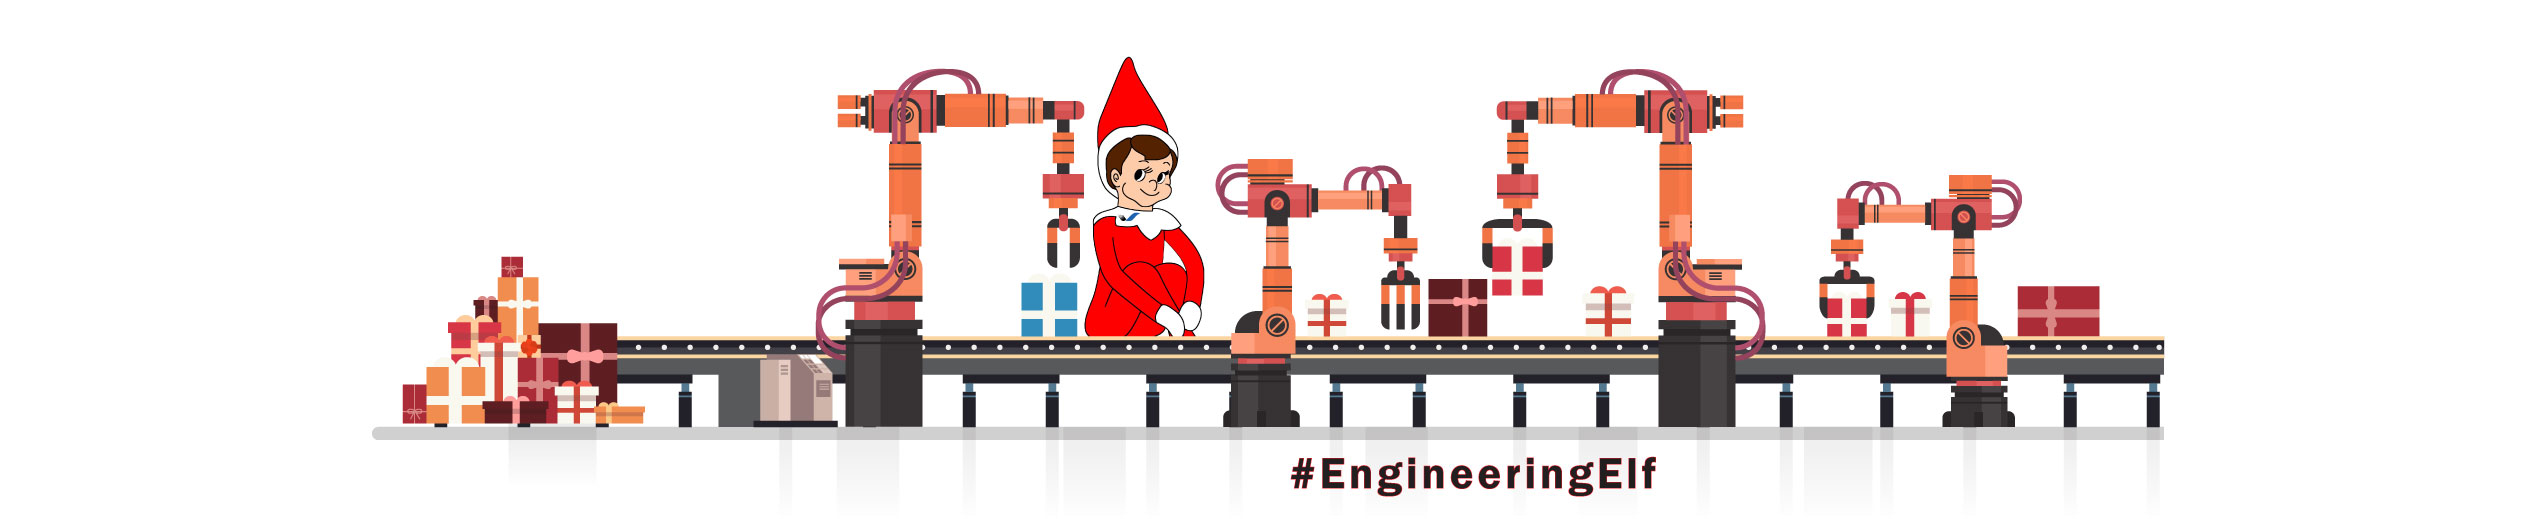 Engineering Elf